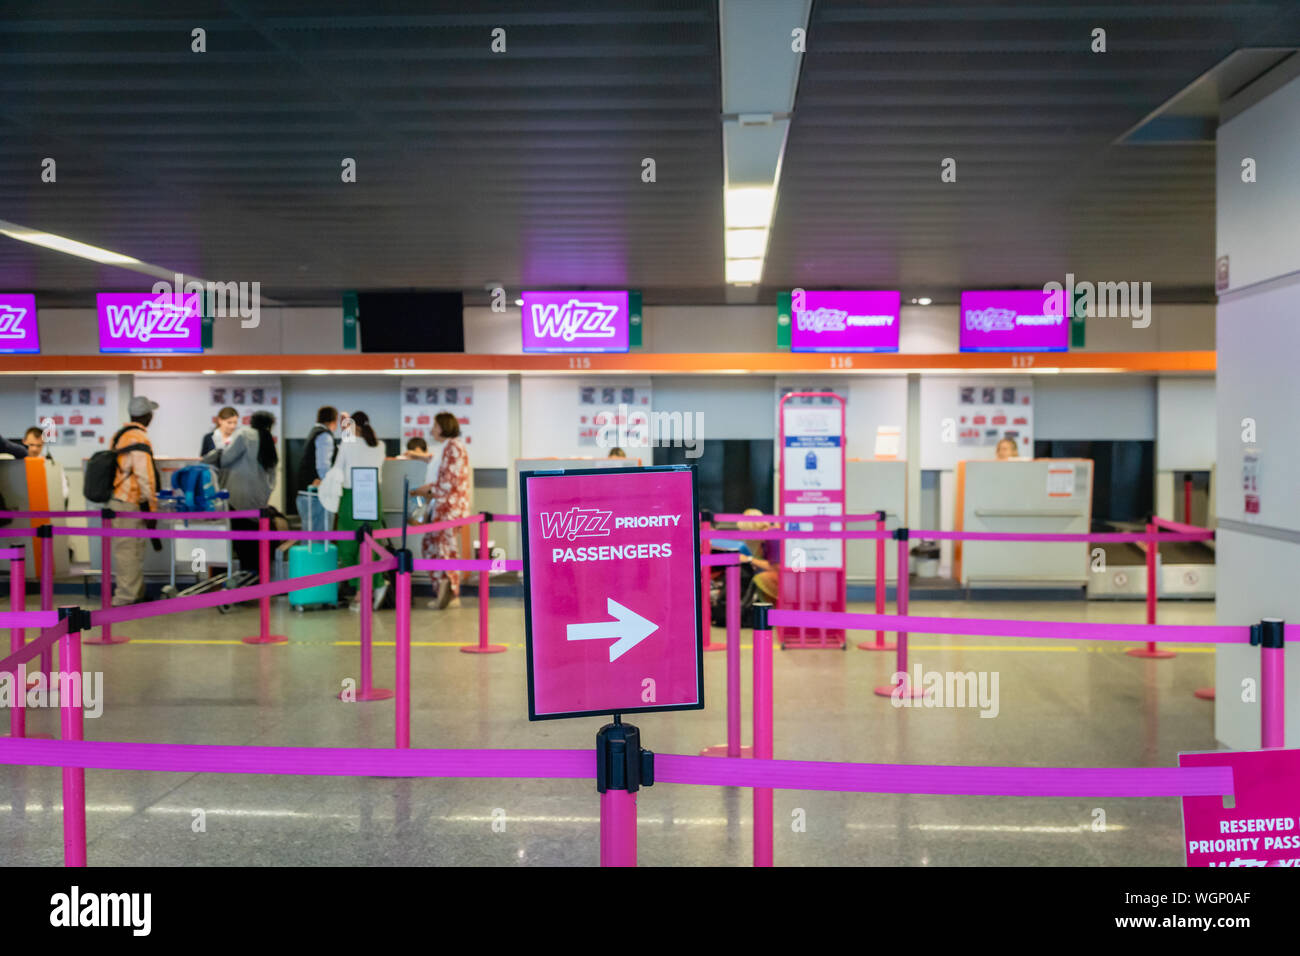 Warschau, Polen - Juli 2019: Wizz Air Check-in-Schalter und Passagiere am Flughafen Warschau Chopin warten. Wizz Air ist eine ungarische Billigfluggesellschaft Stockfoto